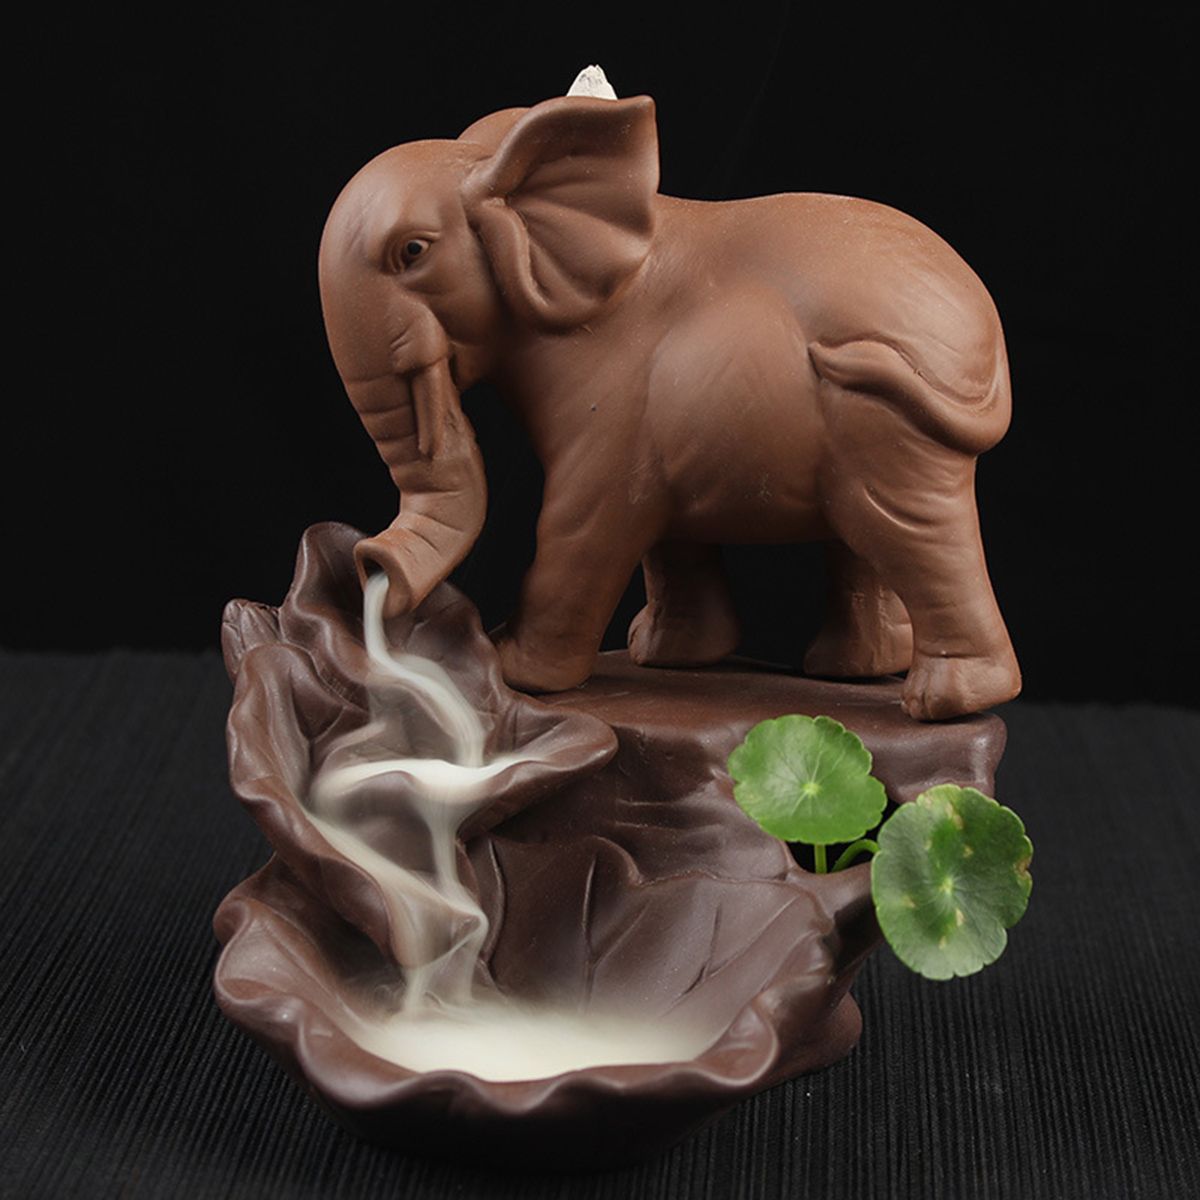 Elephant-Backflow-Incense-Burner-Holder-Censer-Ceramic-Home-Decorations-1479056